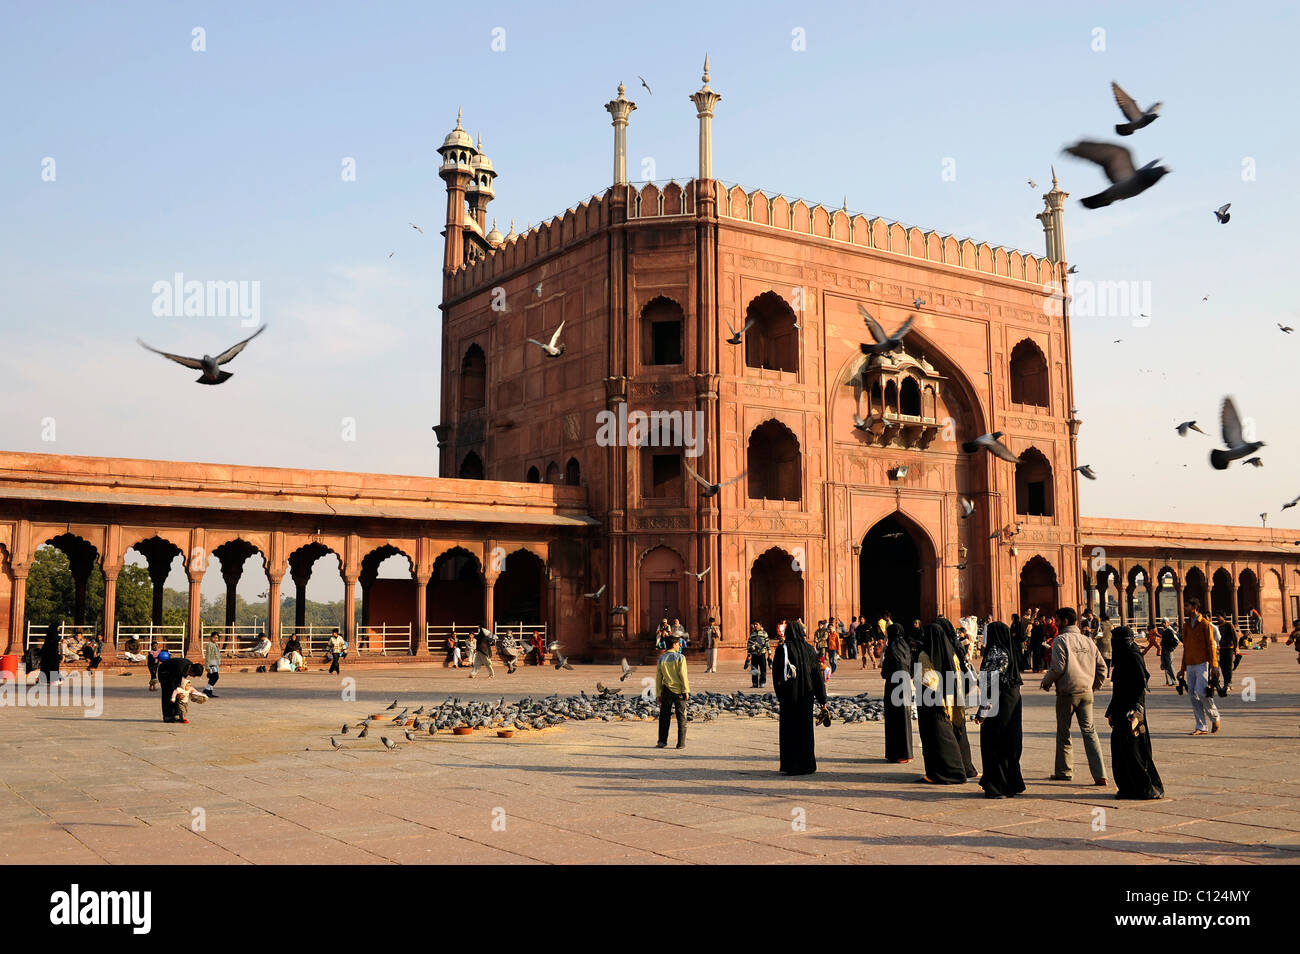 Entrée principale et la cour de la mosquée de vendredi Jama Masjid, Old Delhi, Delhi, de l'Uttar Pradesh, Inde du Nord, Inde, Asie du Sud, Asie Banque D'Images